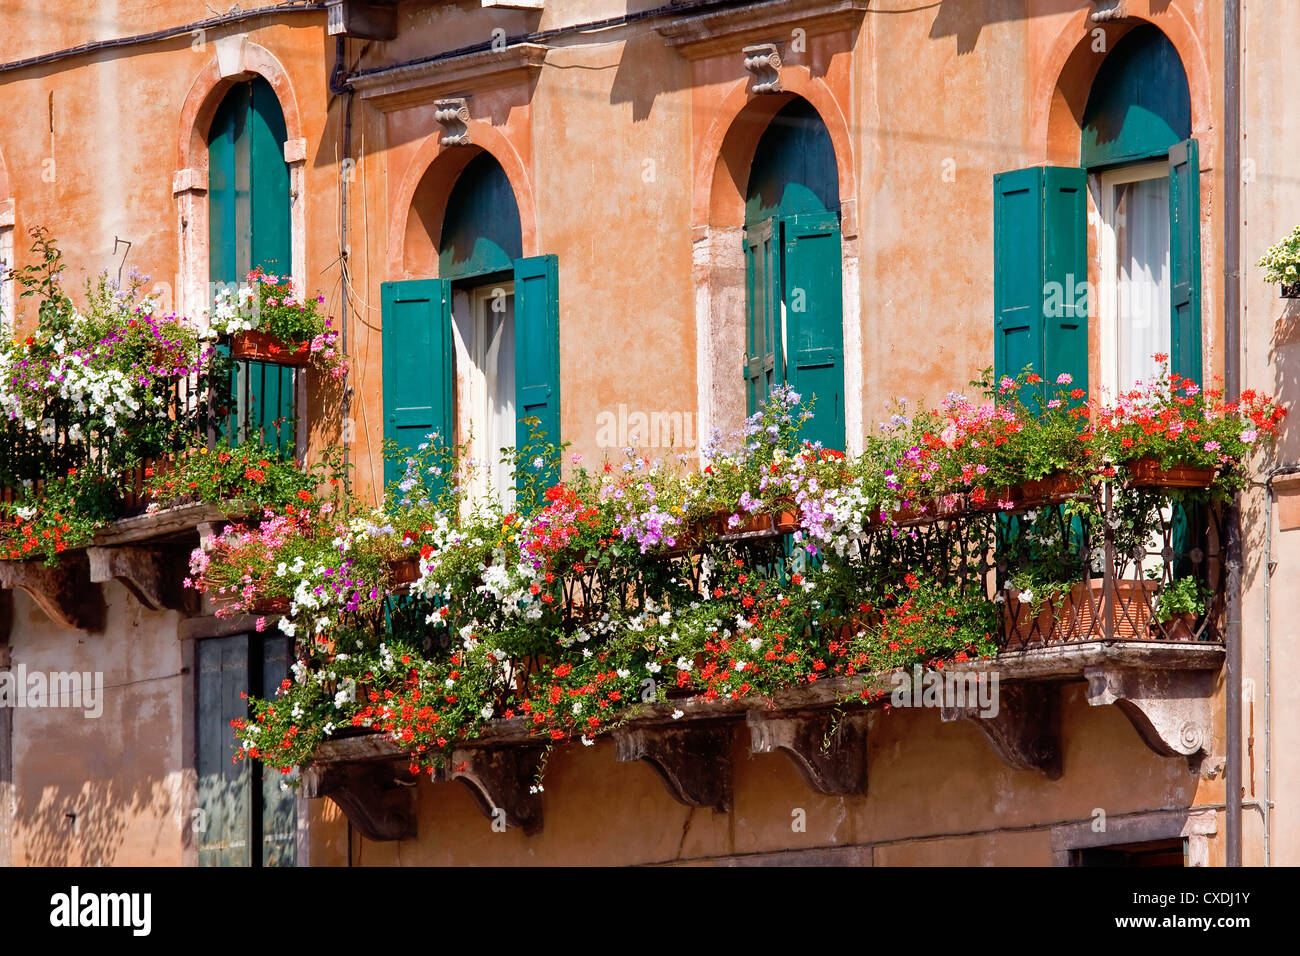 Italian balcony with flowerpots and flowers Stock Photo - Alamy